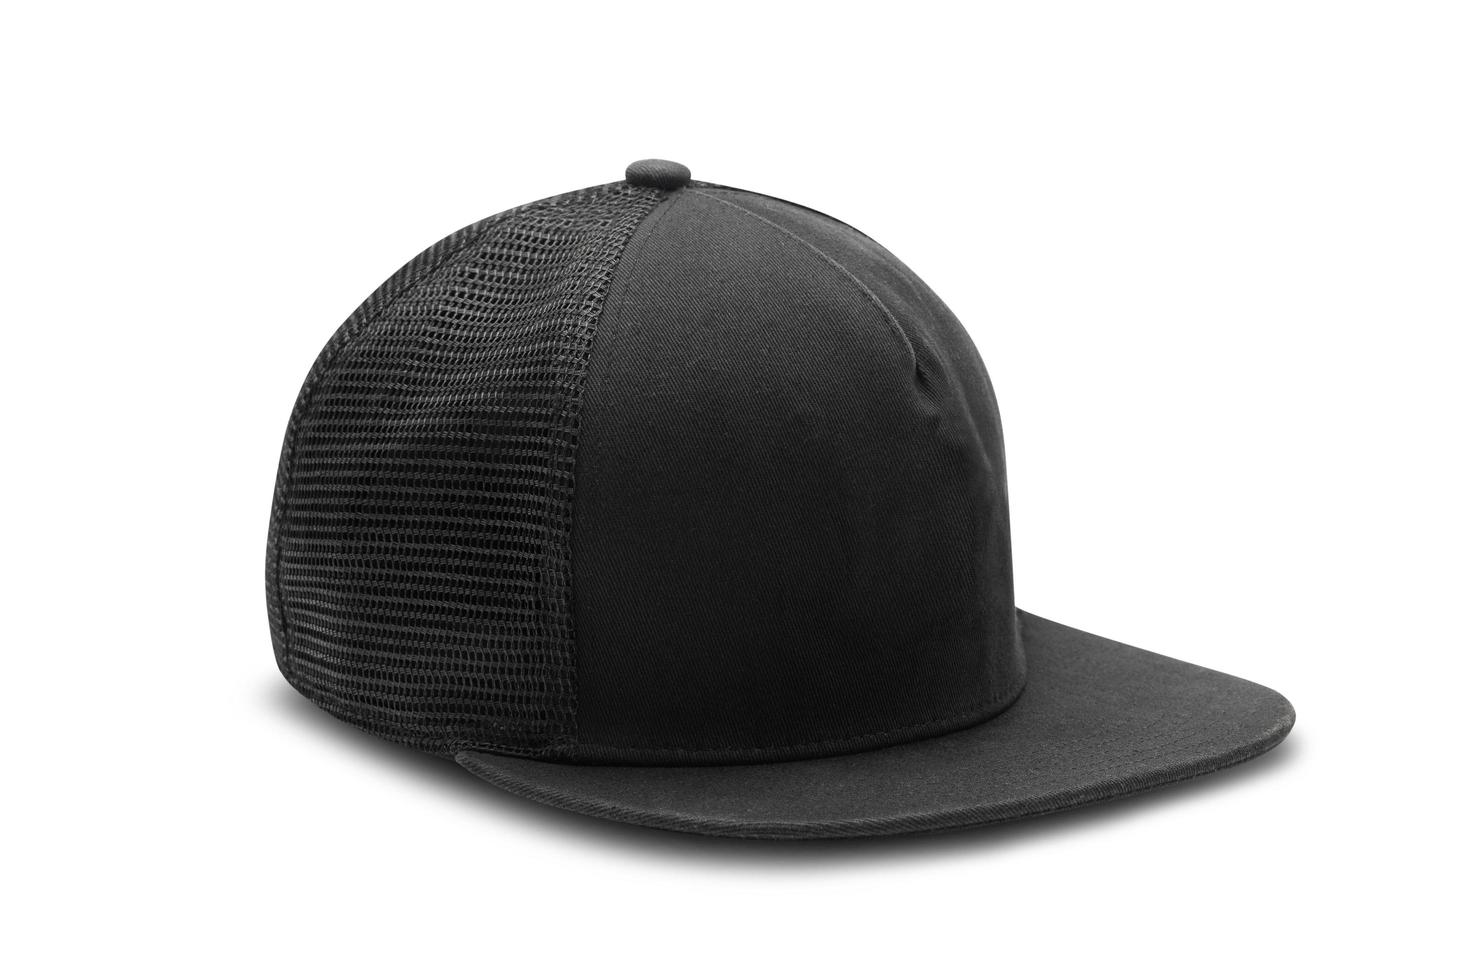 Snapback hat isolated on white background photo